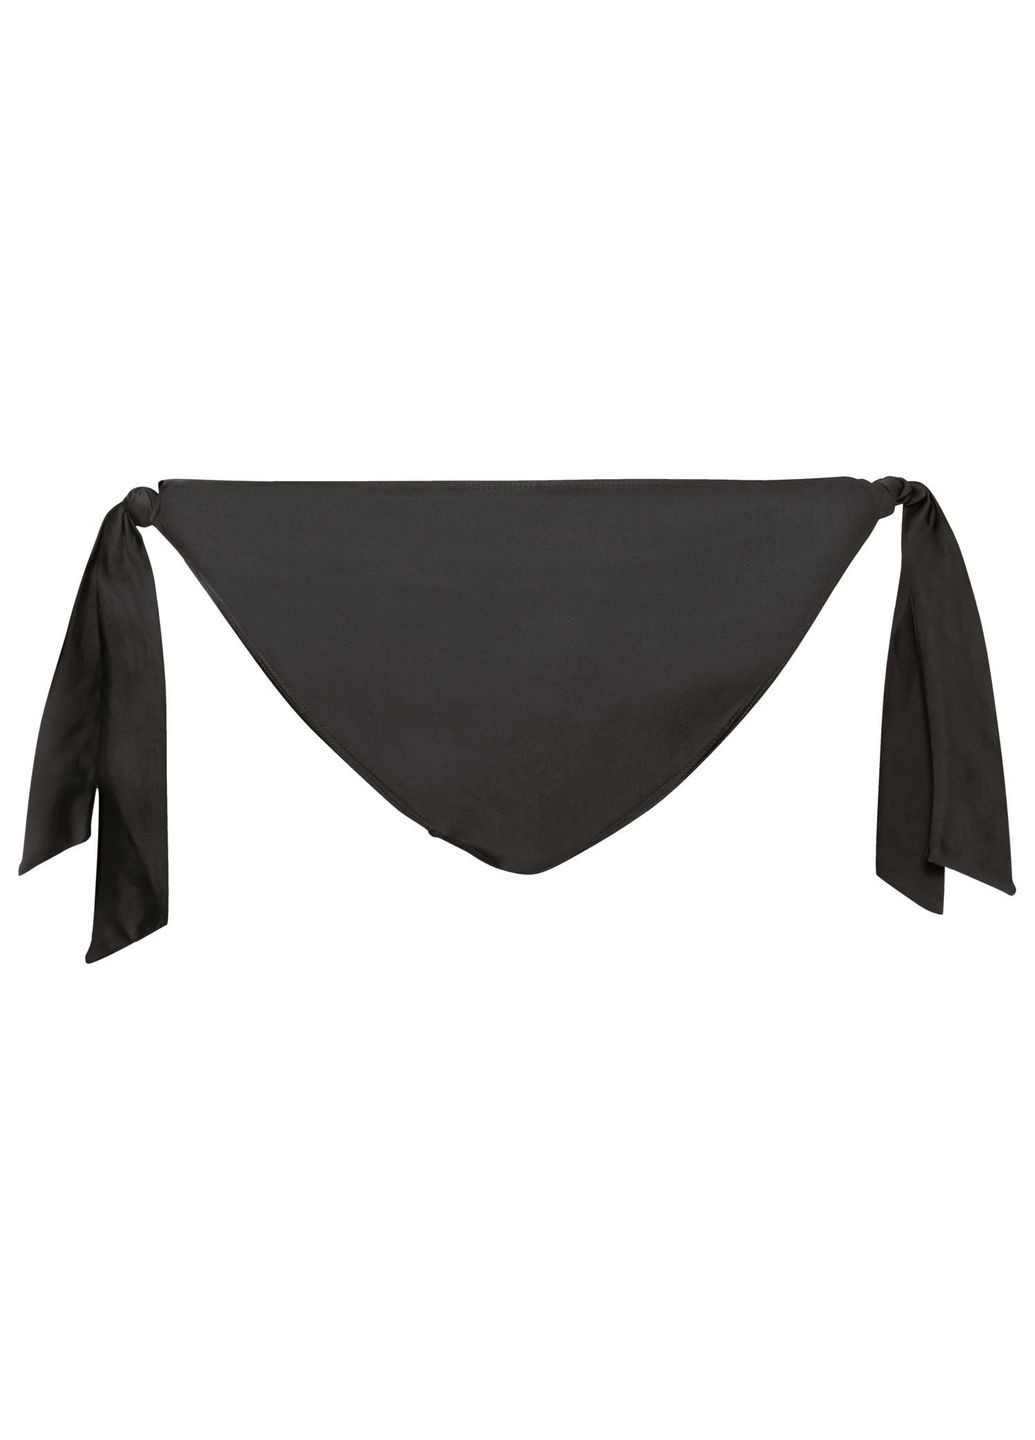 Черный купальник раздельный на подкладке для женщины lycra® 372167-2 бикини Esmara С открытой спиной, С открытыми плечами